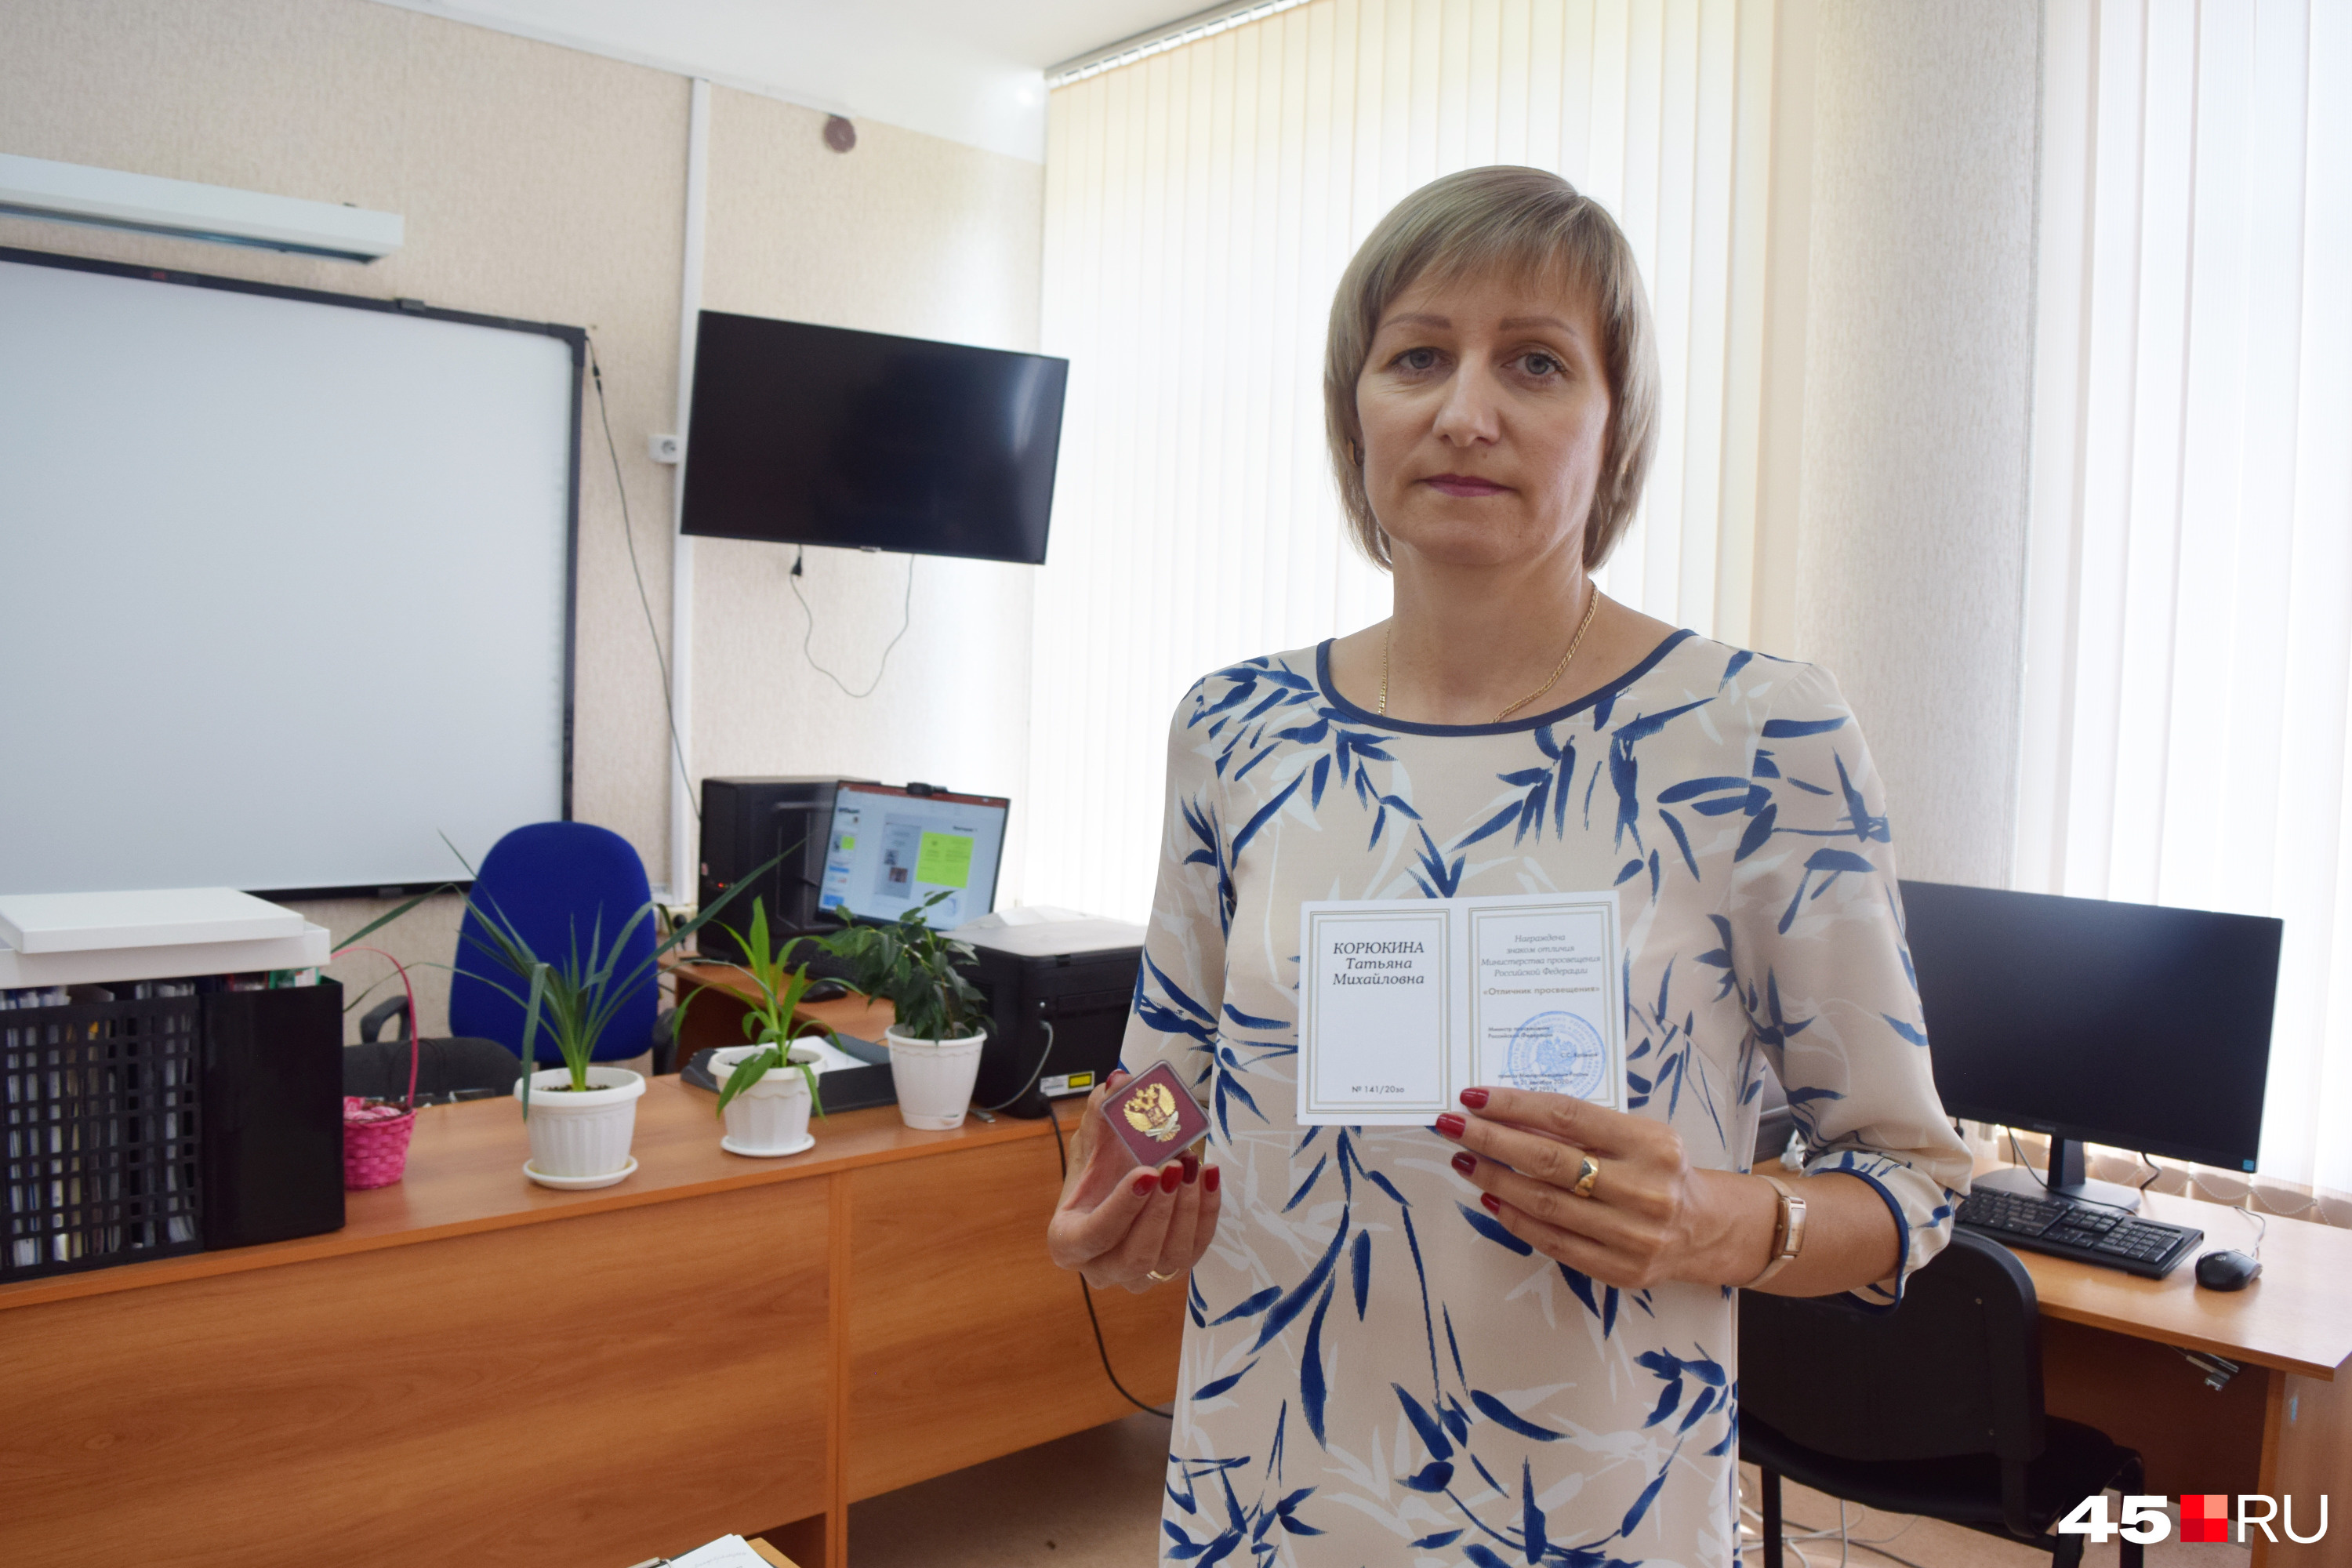 Два года назад педагог получила знак отличия Минпросвещения РФ «Отличник просвещения»